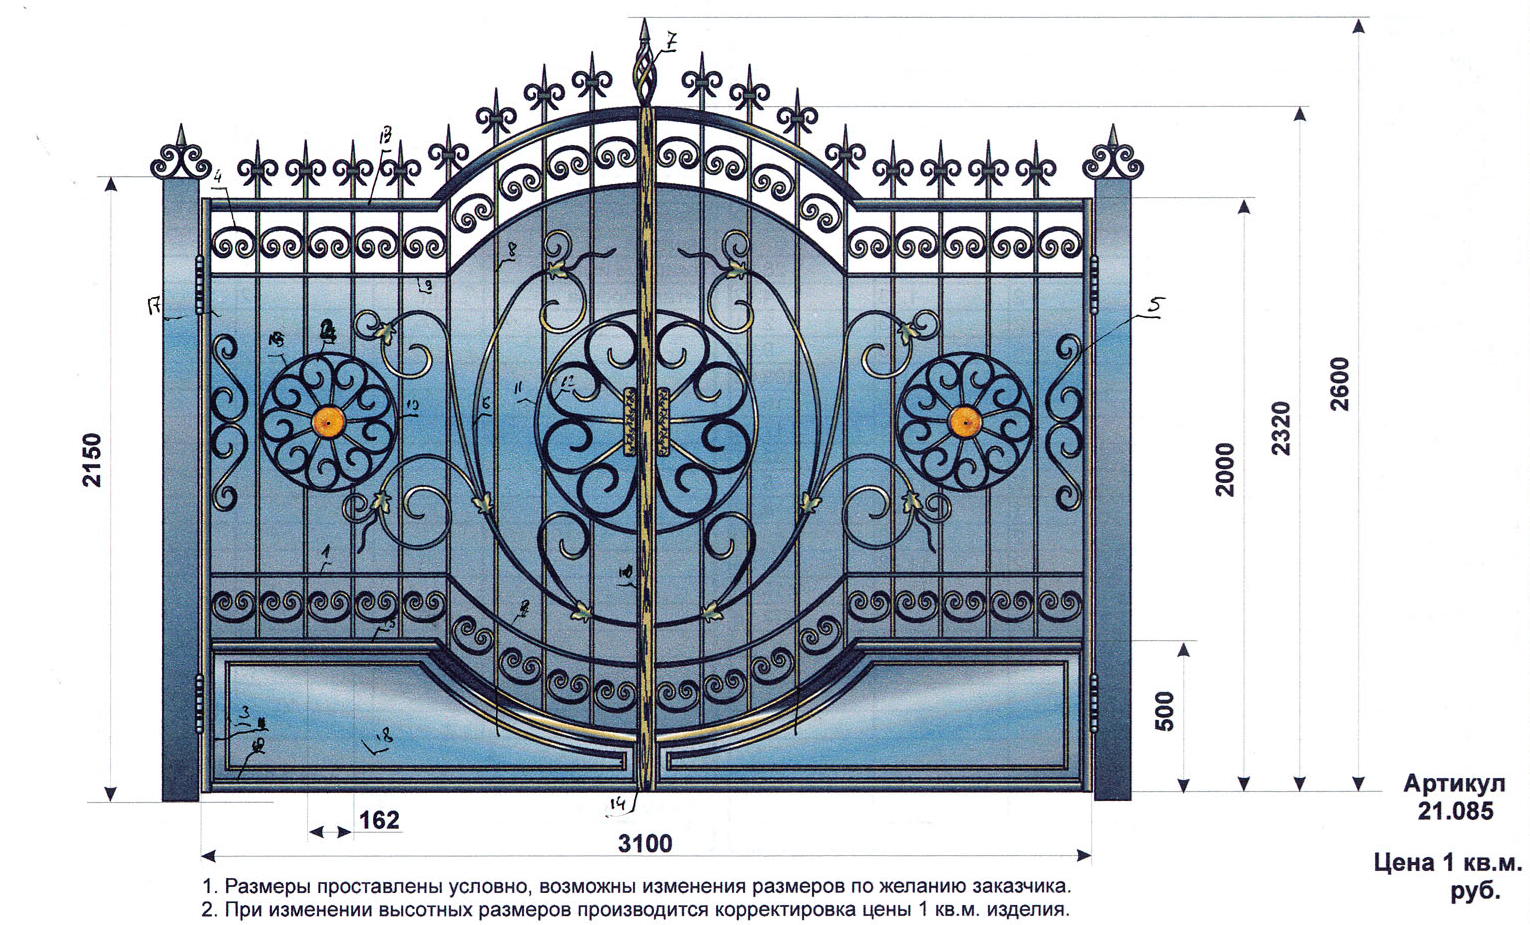 Кованые заборы и ворота: выбора материала, применение в ландшафтном дизайне + фото идеи